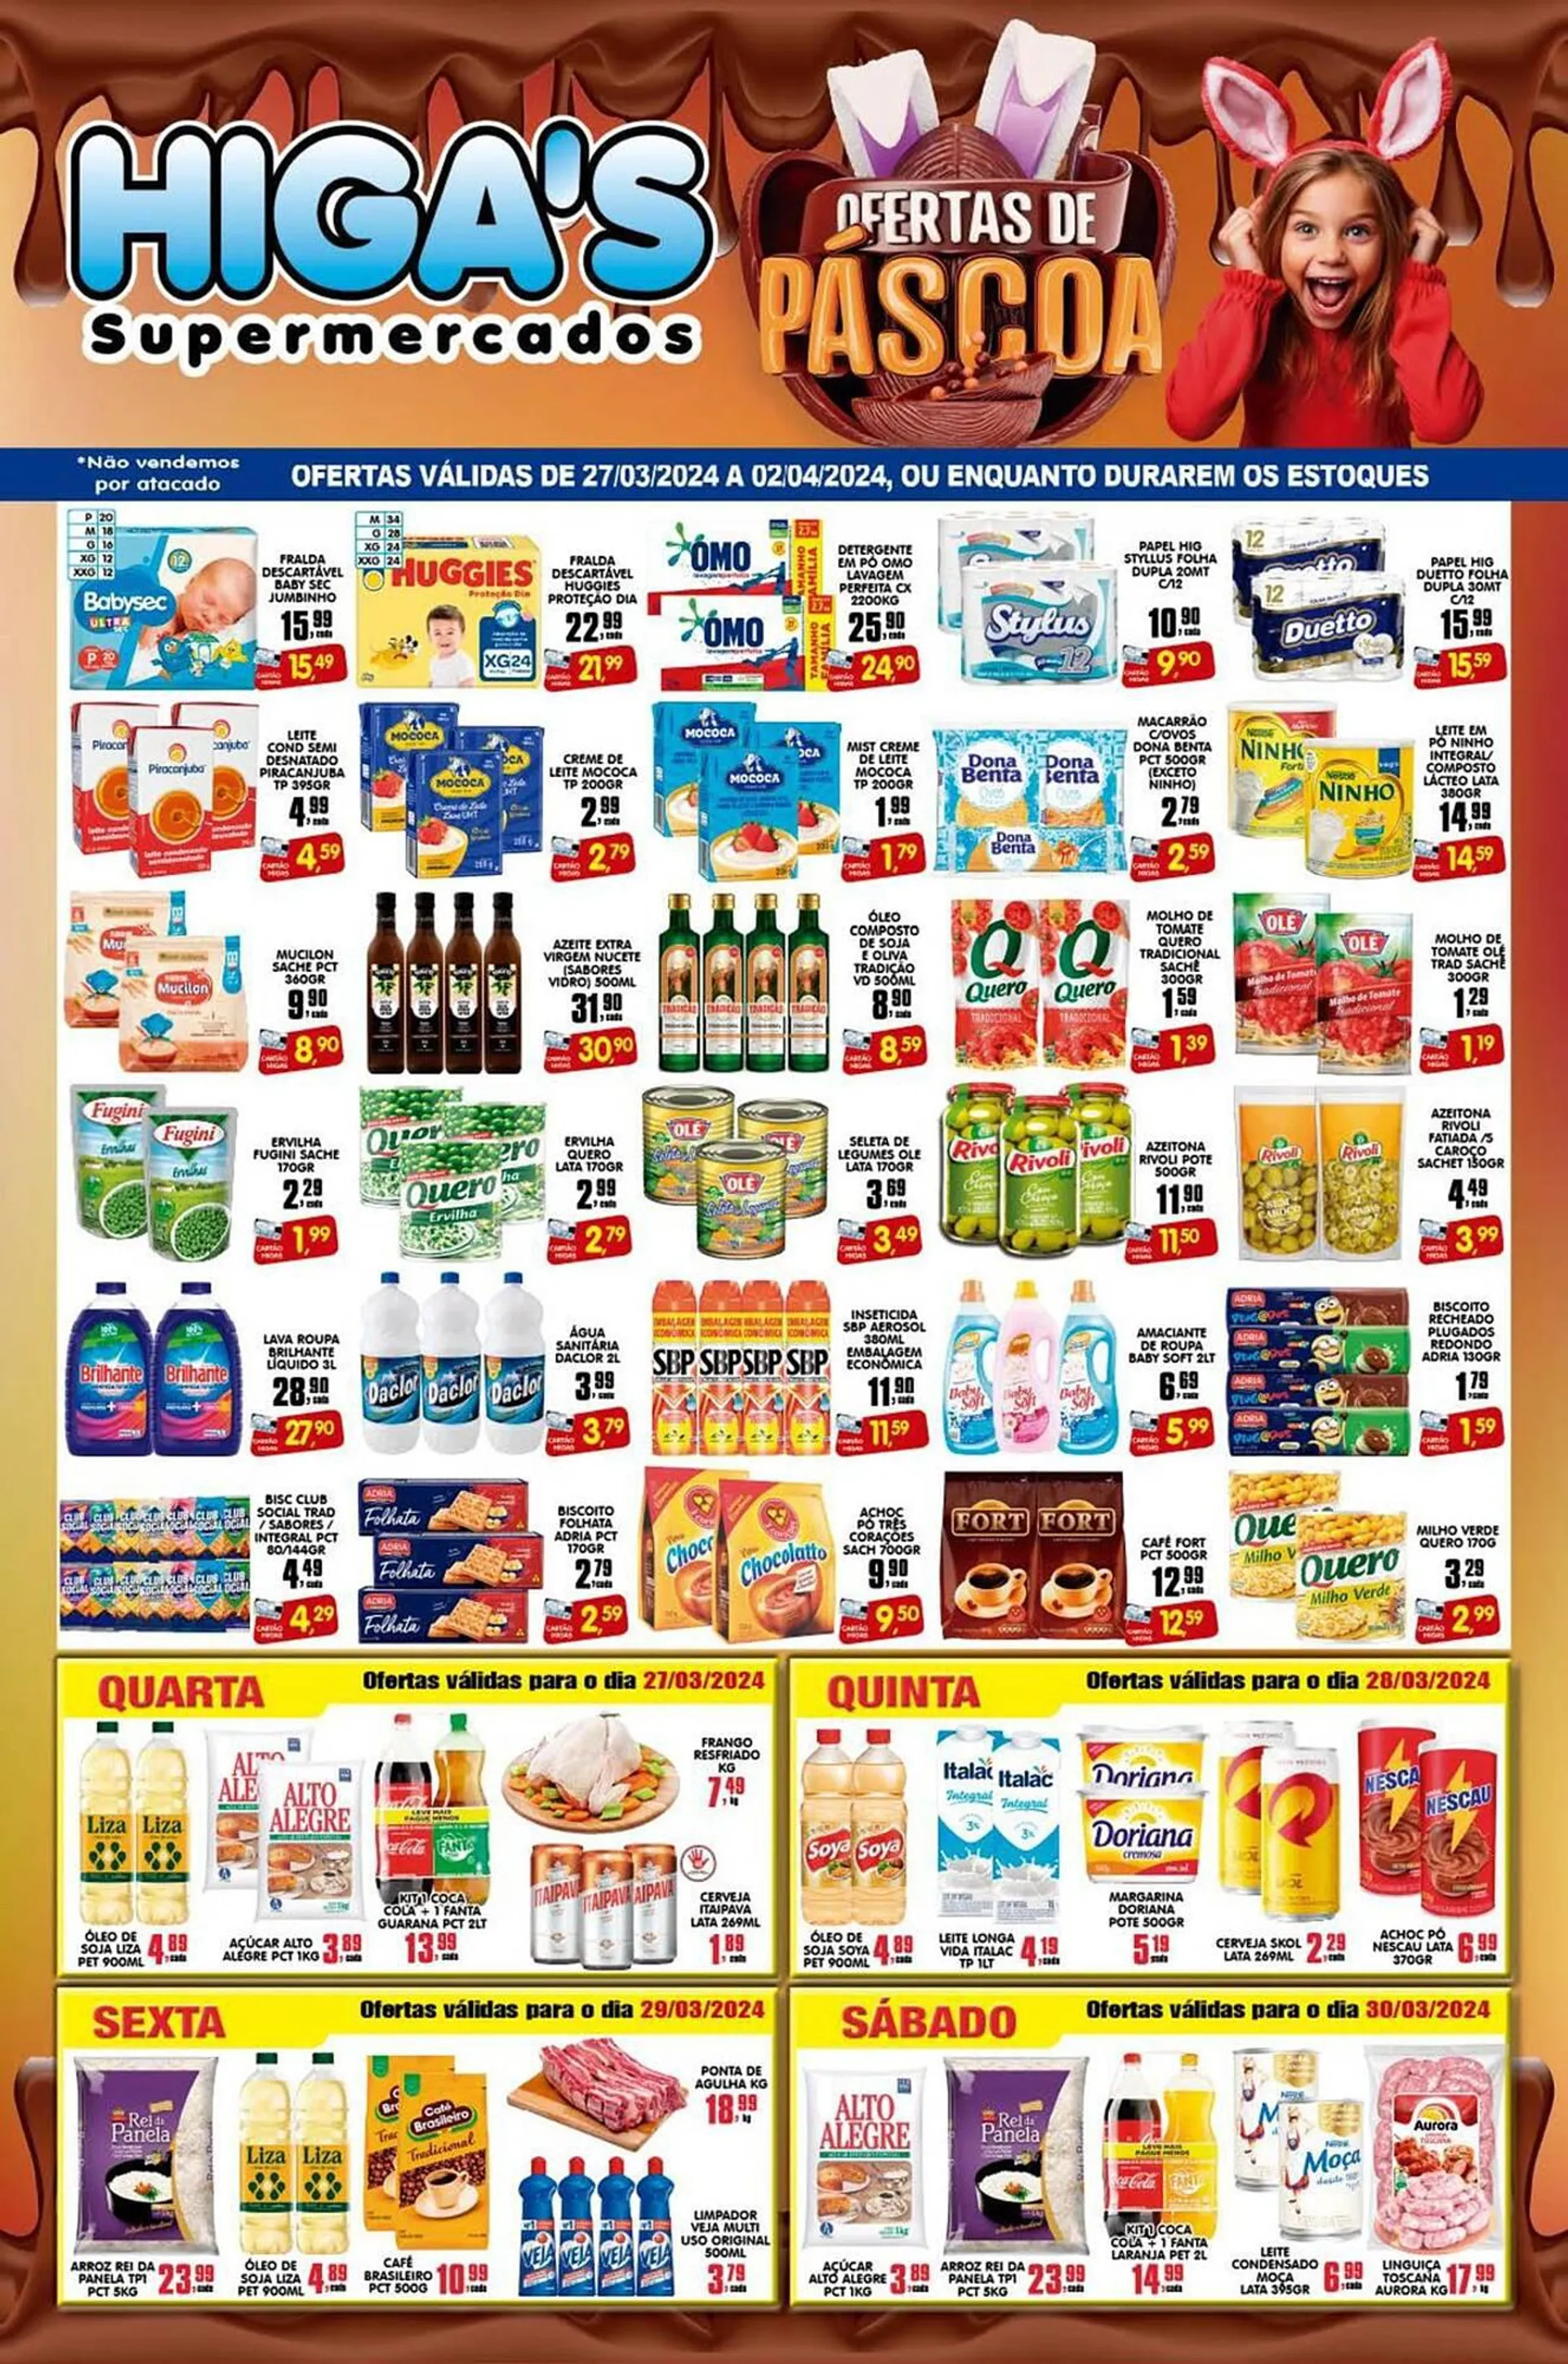 Encarte de Catálogo Higa's Supermercado 27 de março até 2 de abril 2024 - Pagina 